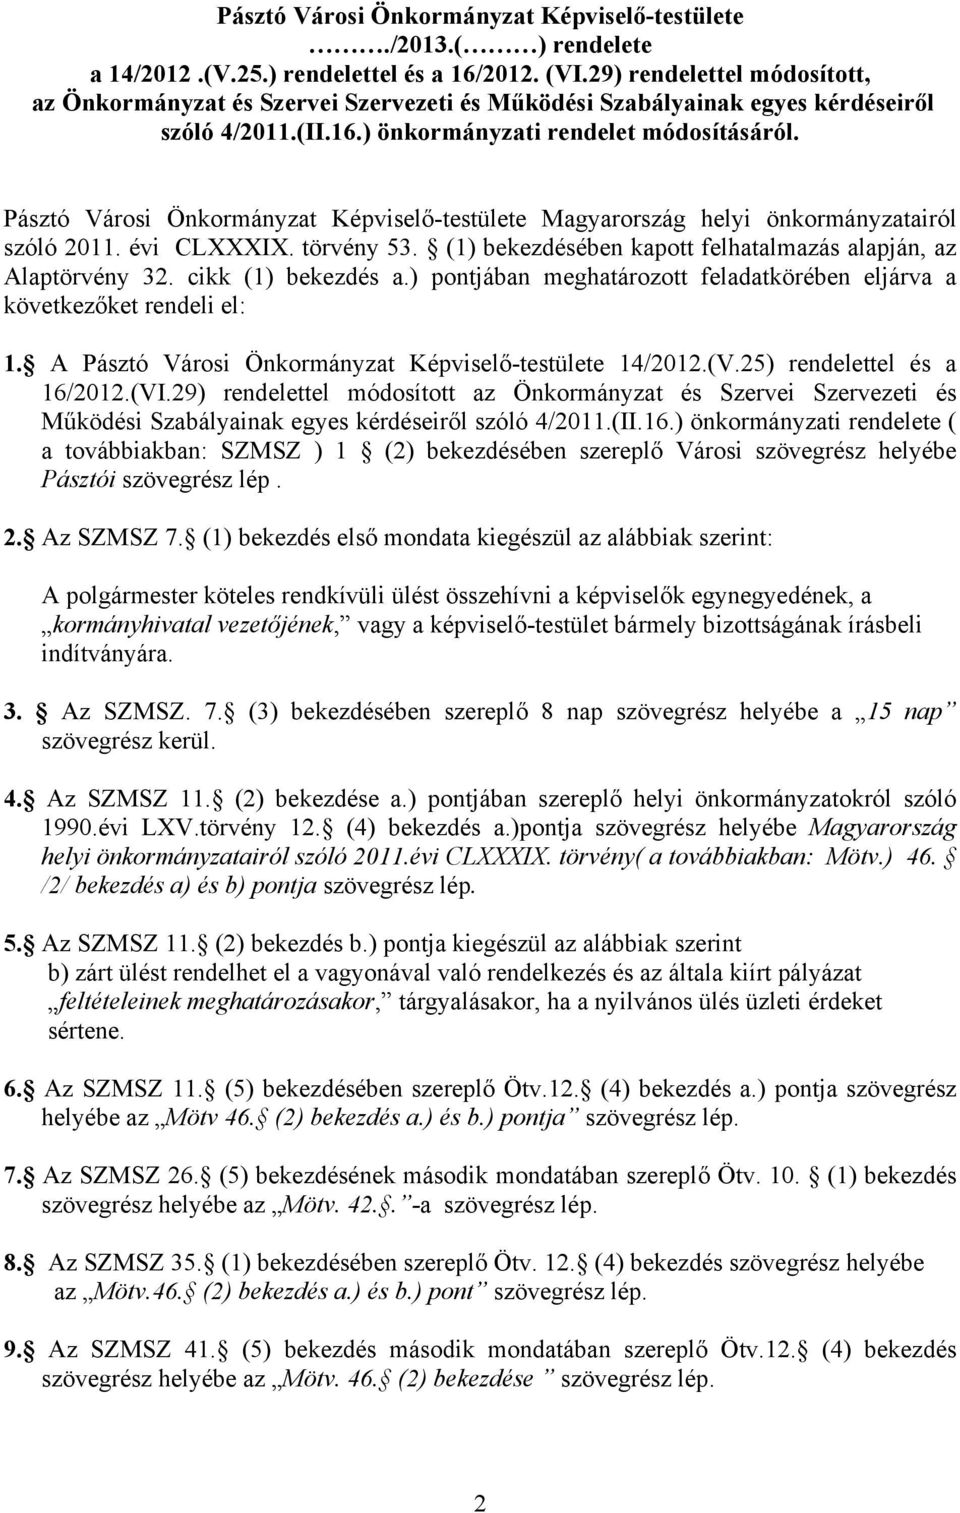 Pásztó Városi Önkormányzat Képviselő-testülete Magyarország helyi önkormányzatairól szóló 2011. évi CLXXXIX. törvény 53. (1) bekezdésében kapott felhatalmazás alapján, az Alaptörvény 32.